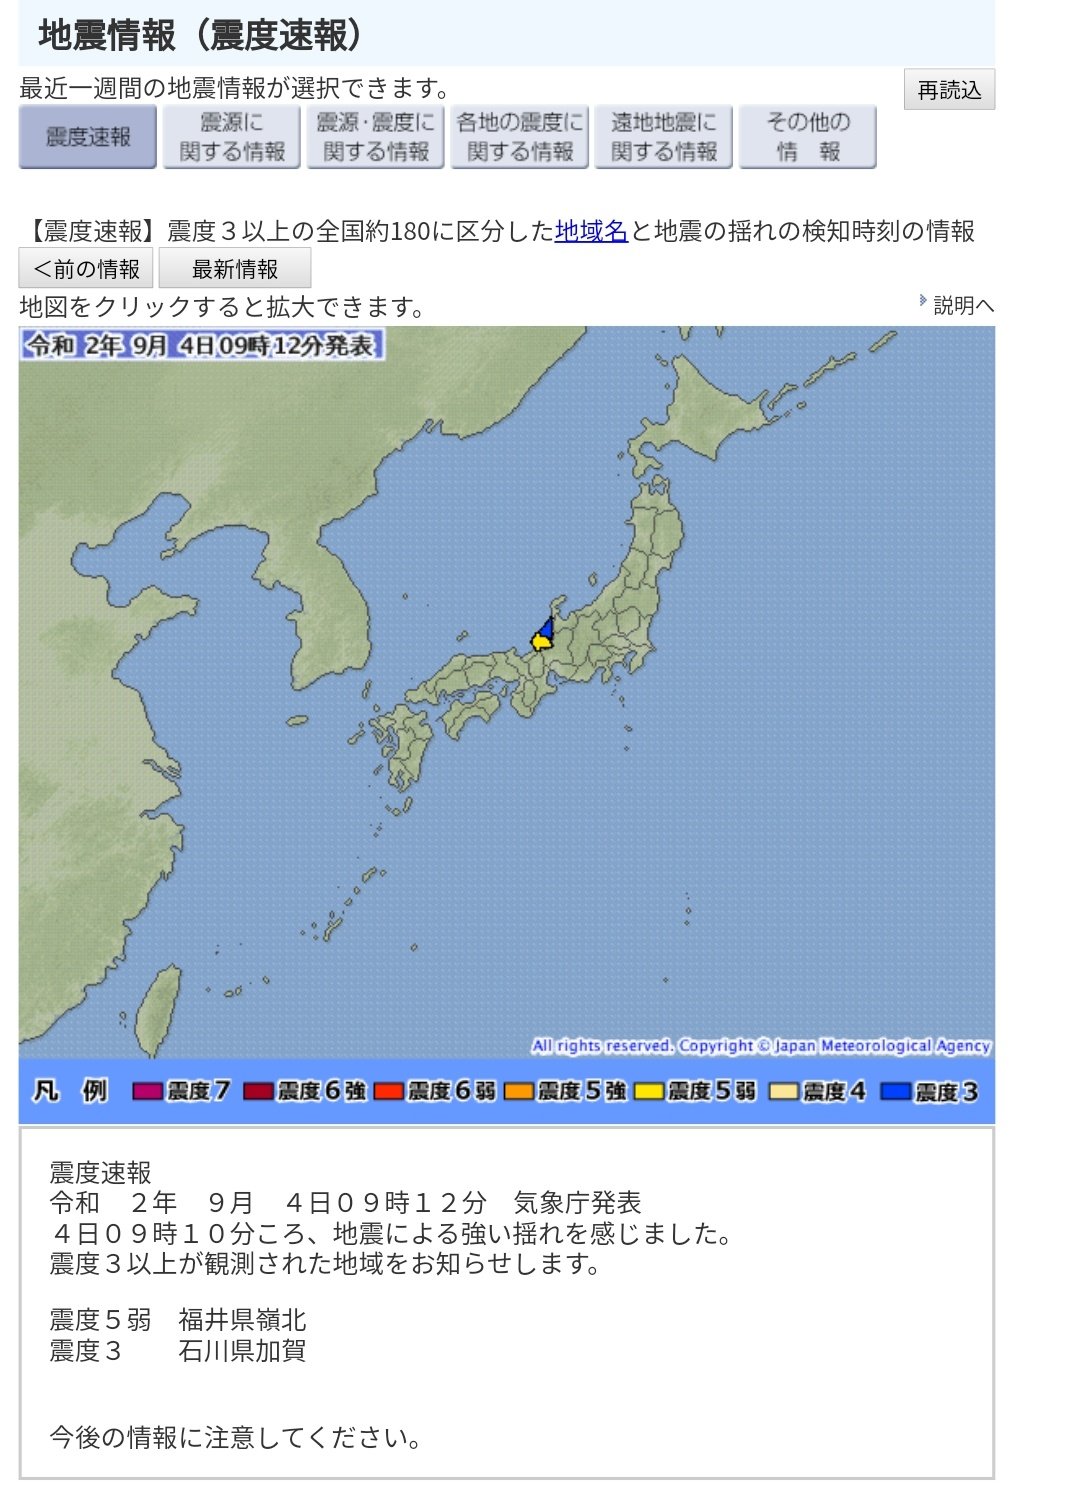 最新 地震 情報 震源データベースと震源マップ最新版